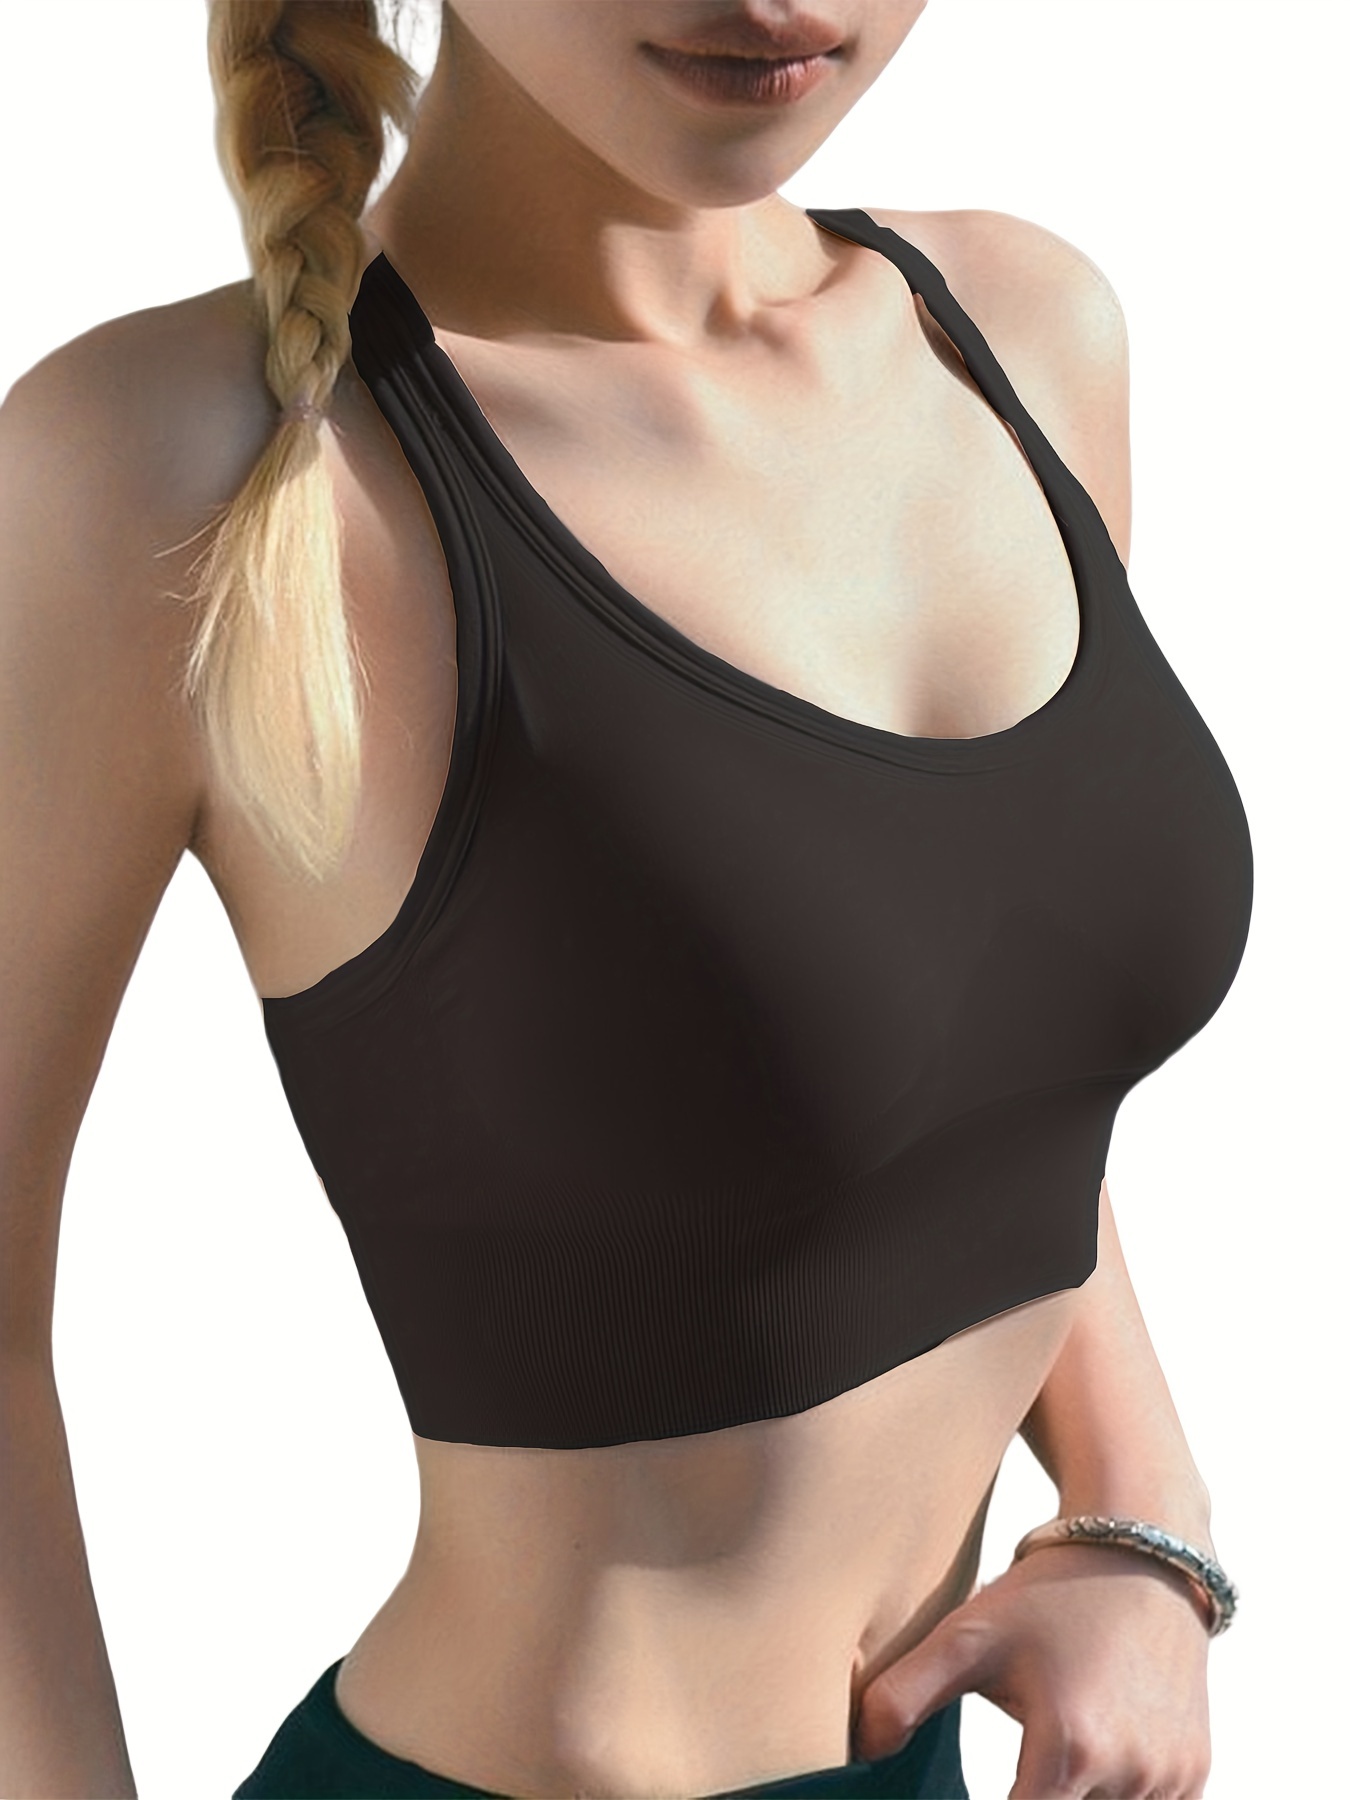 Shop Generic Women Sports Bra Shockproof Underwear Crop Top Bras